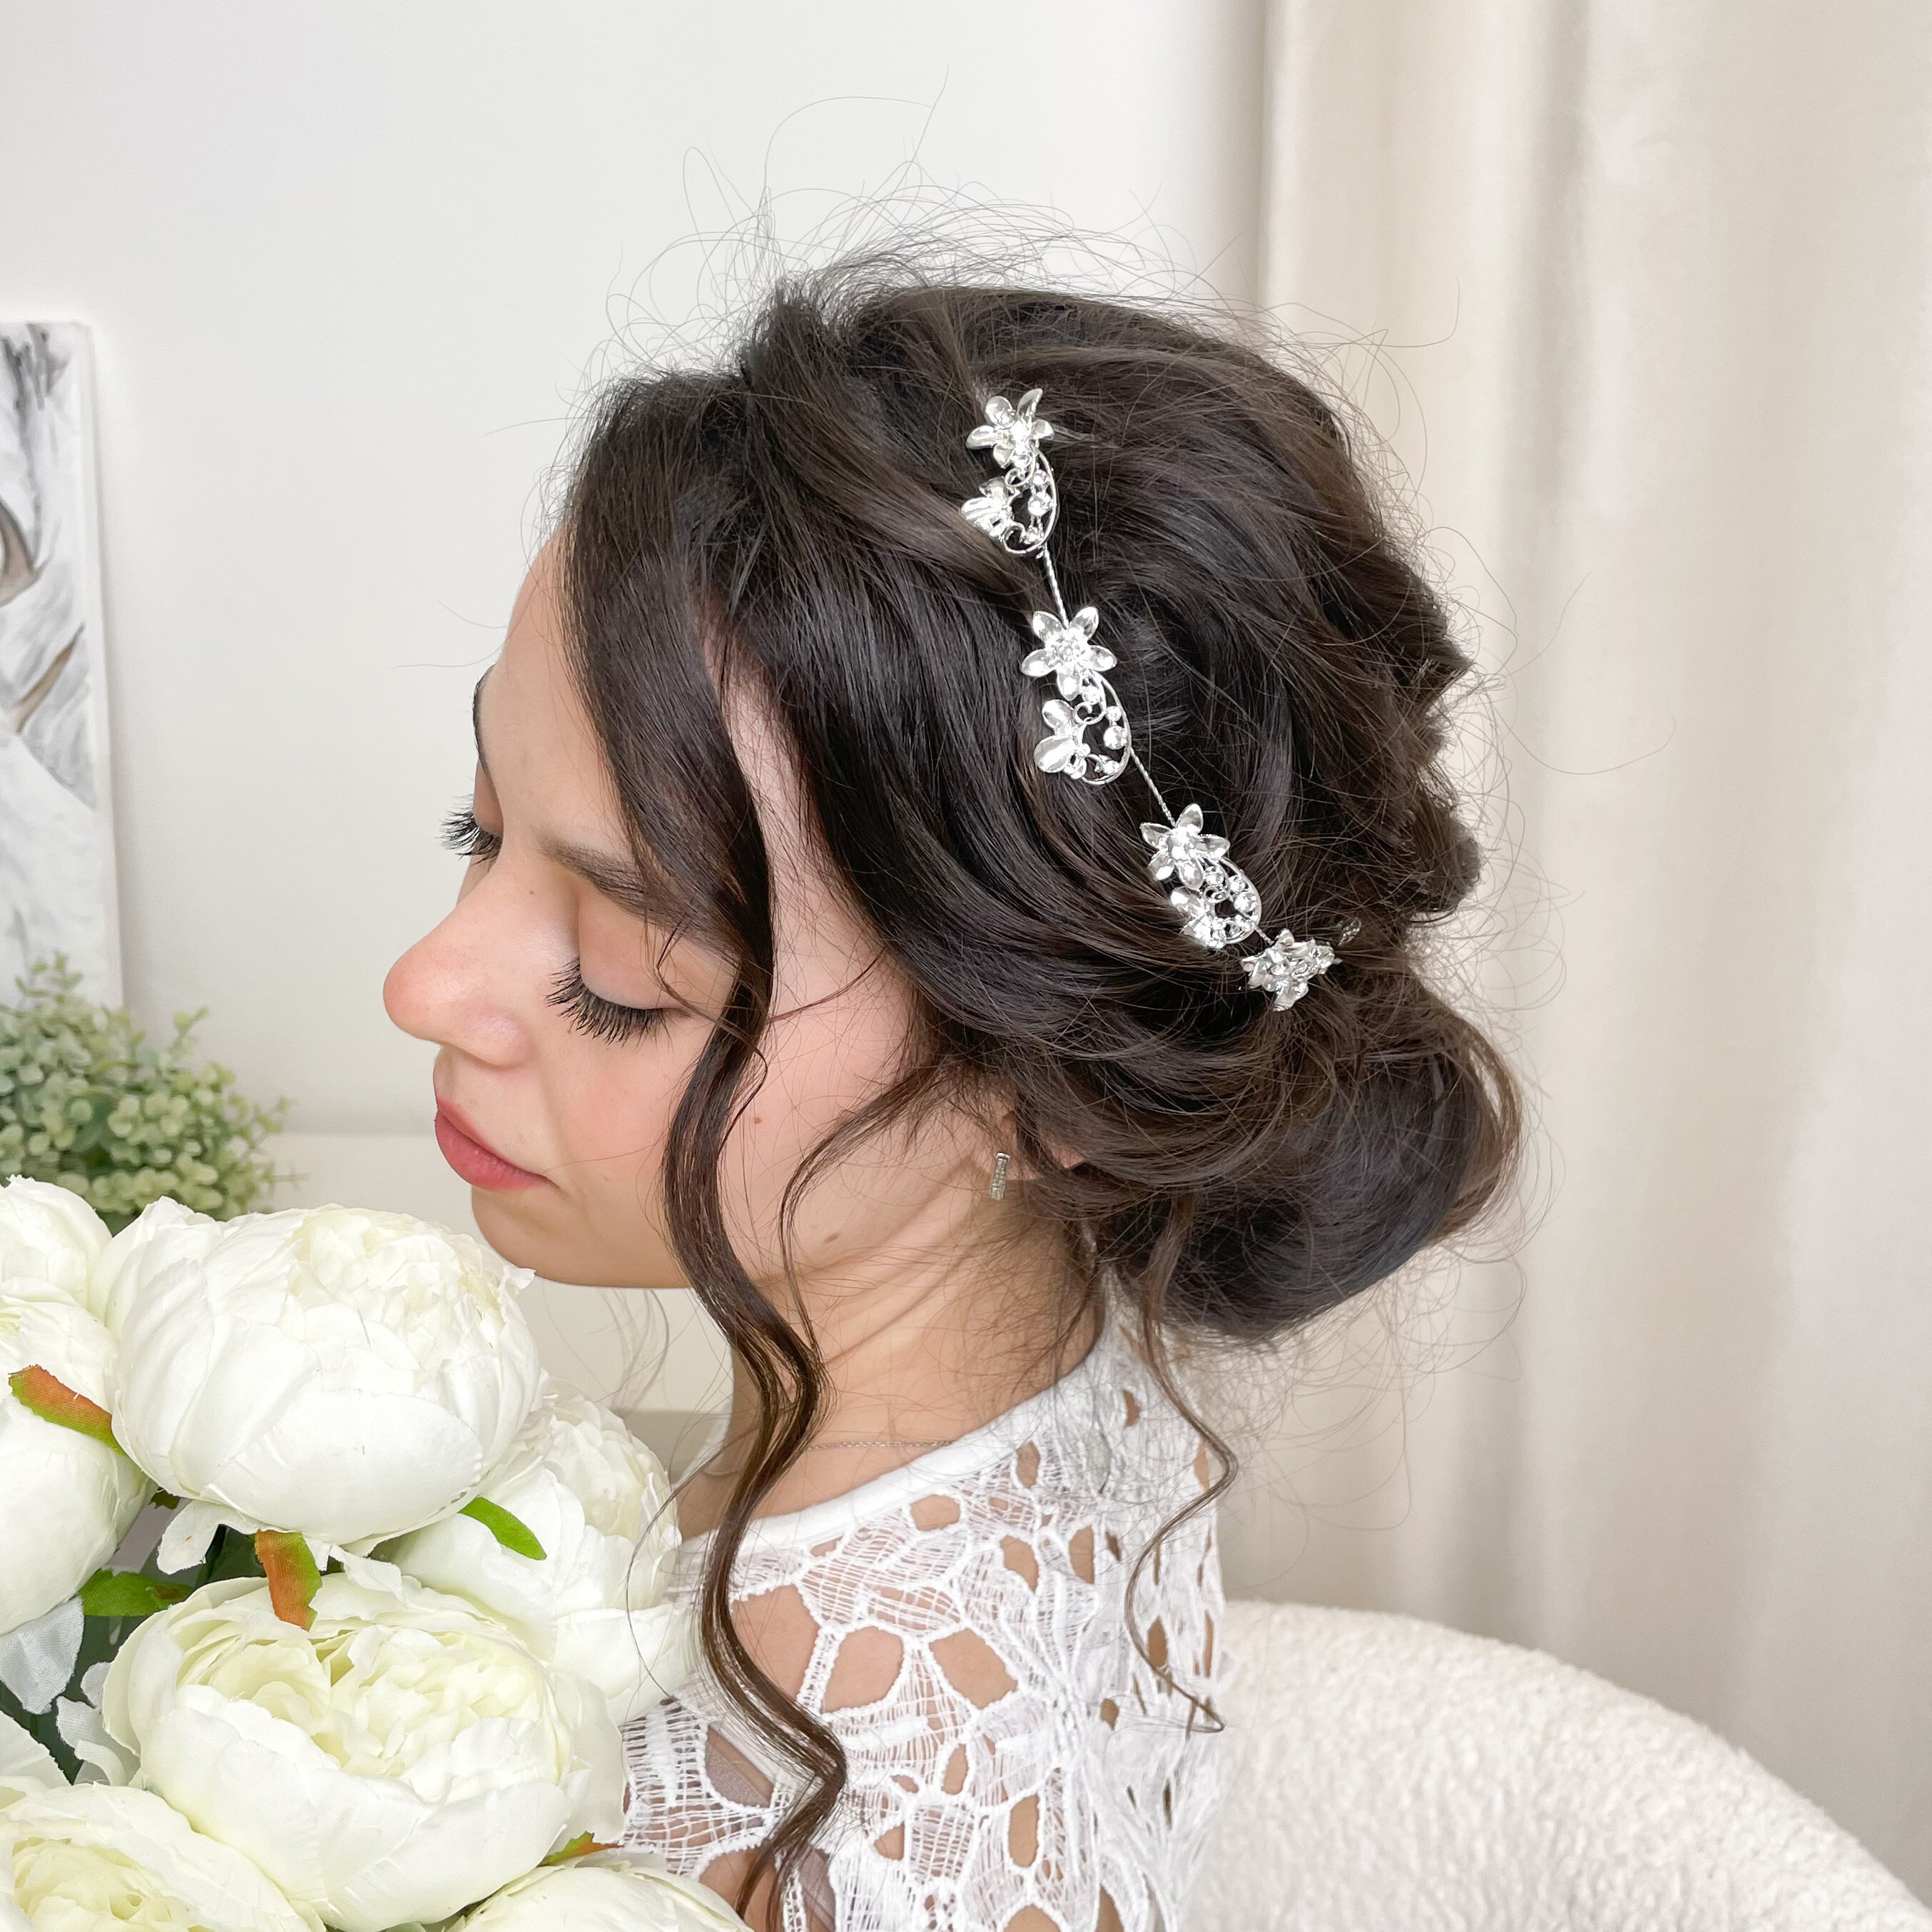 Дополнение образа невесты красивой бижутерией для волос